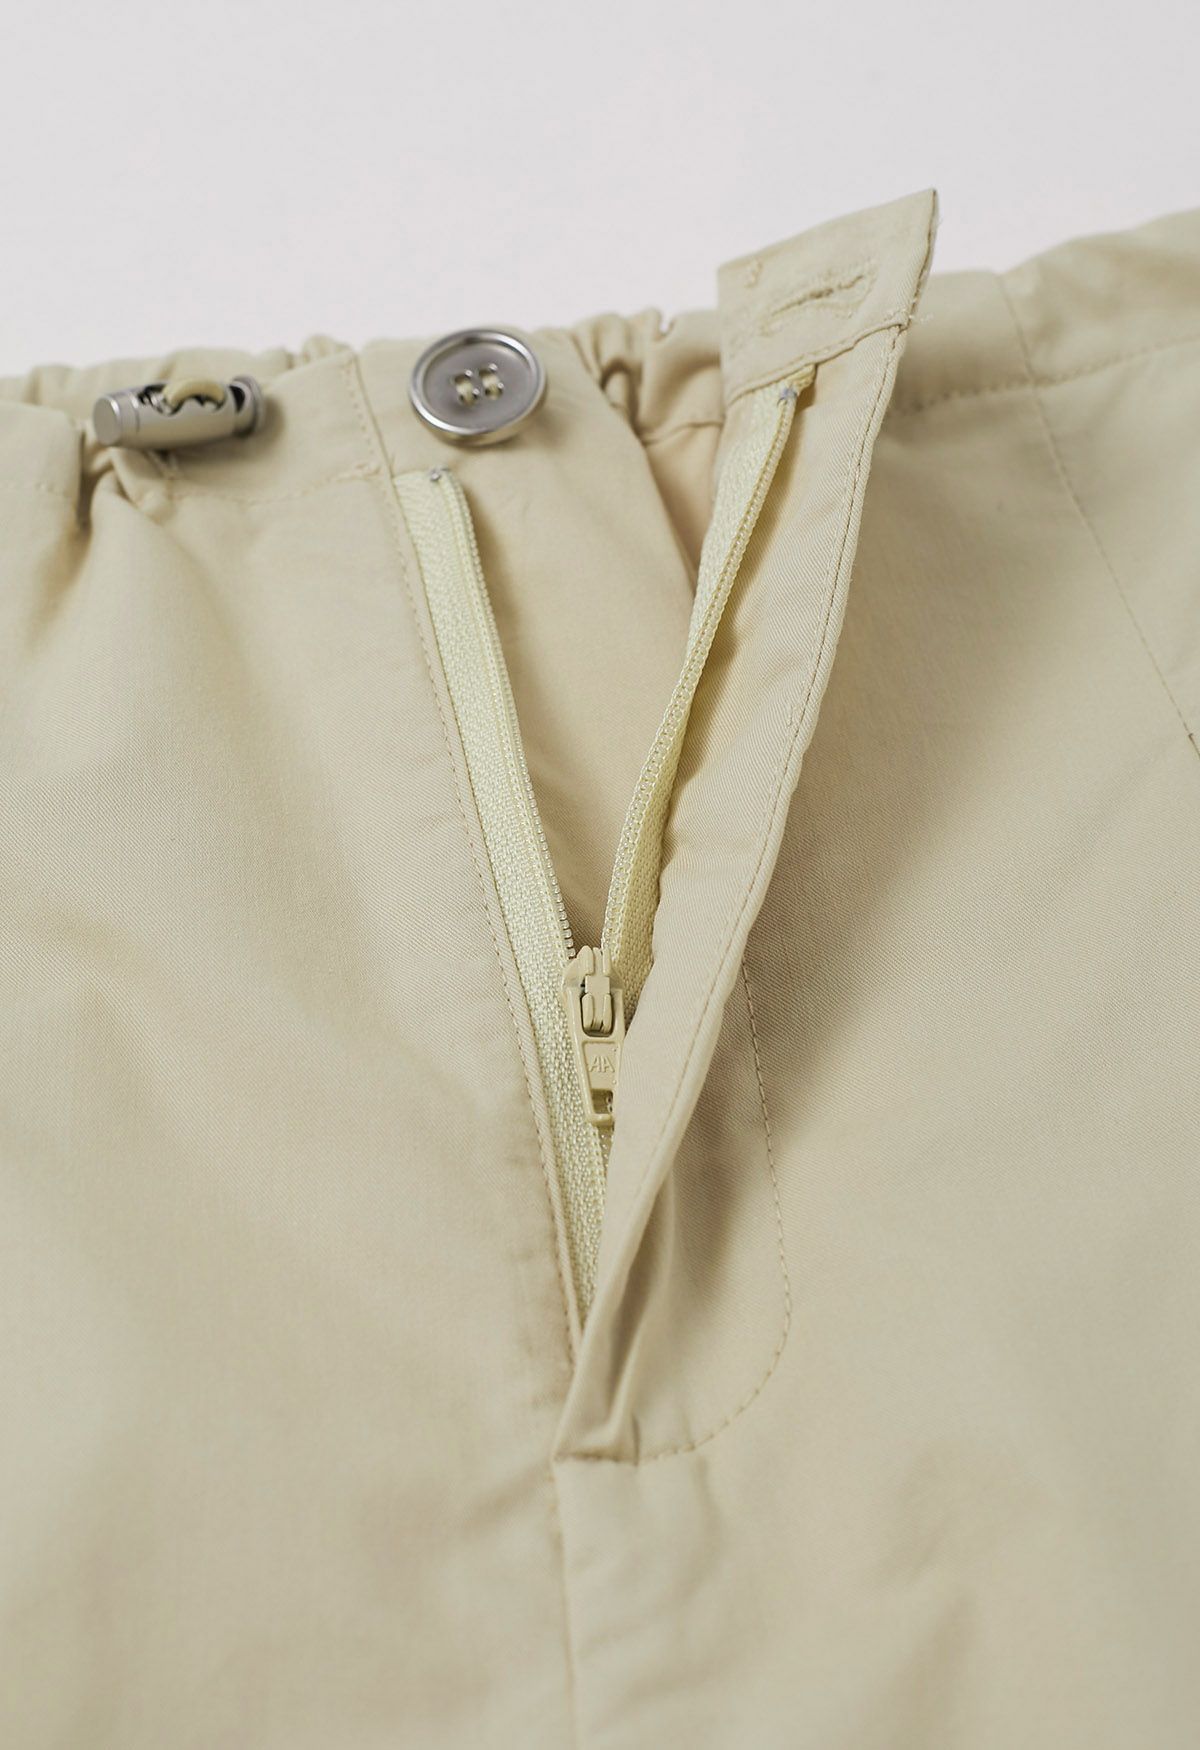 Weite Hose mit entspannter Passform und Kordelzug in der Taille in Khaki